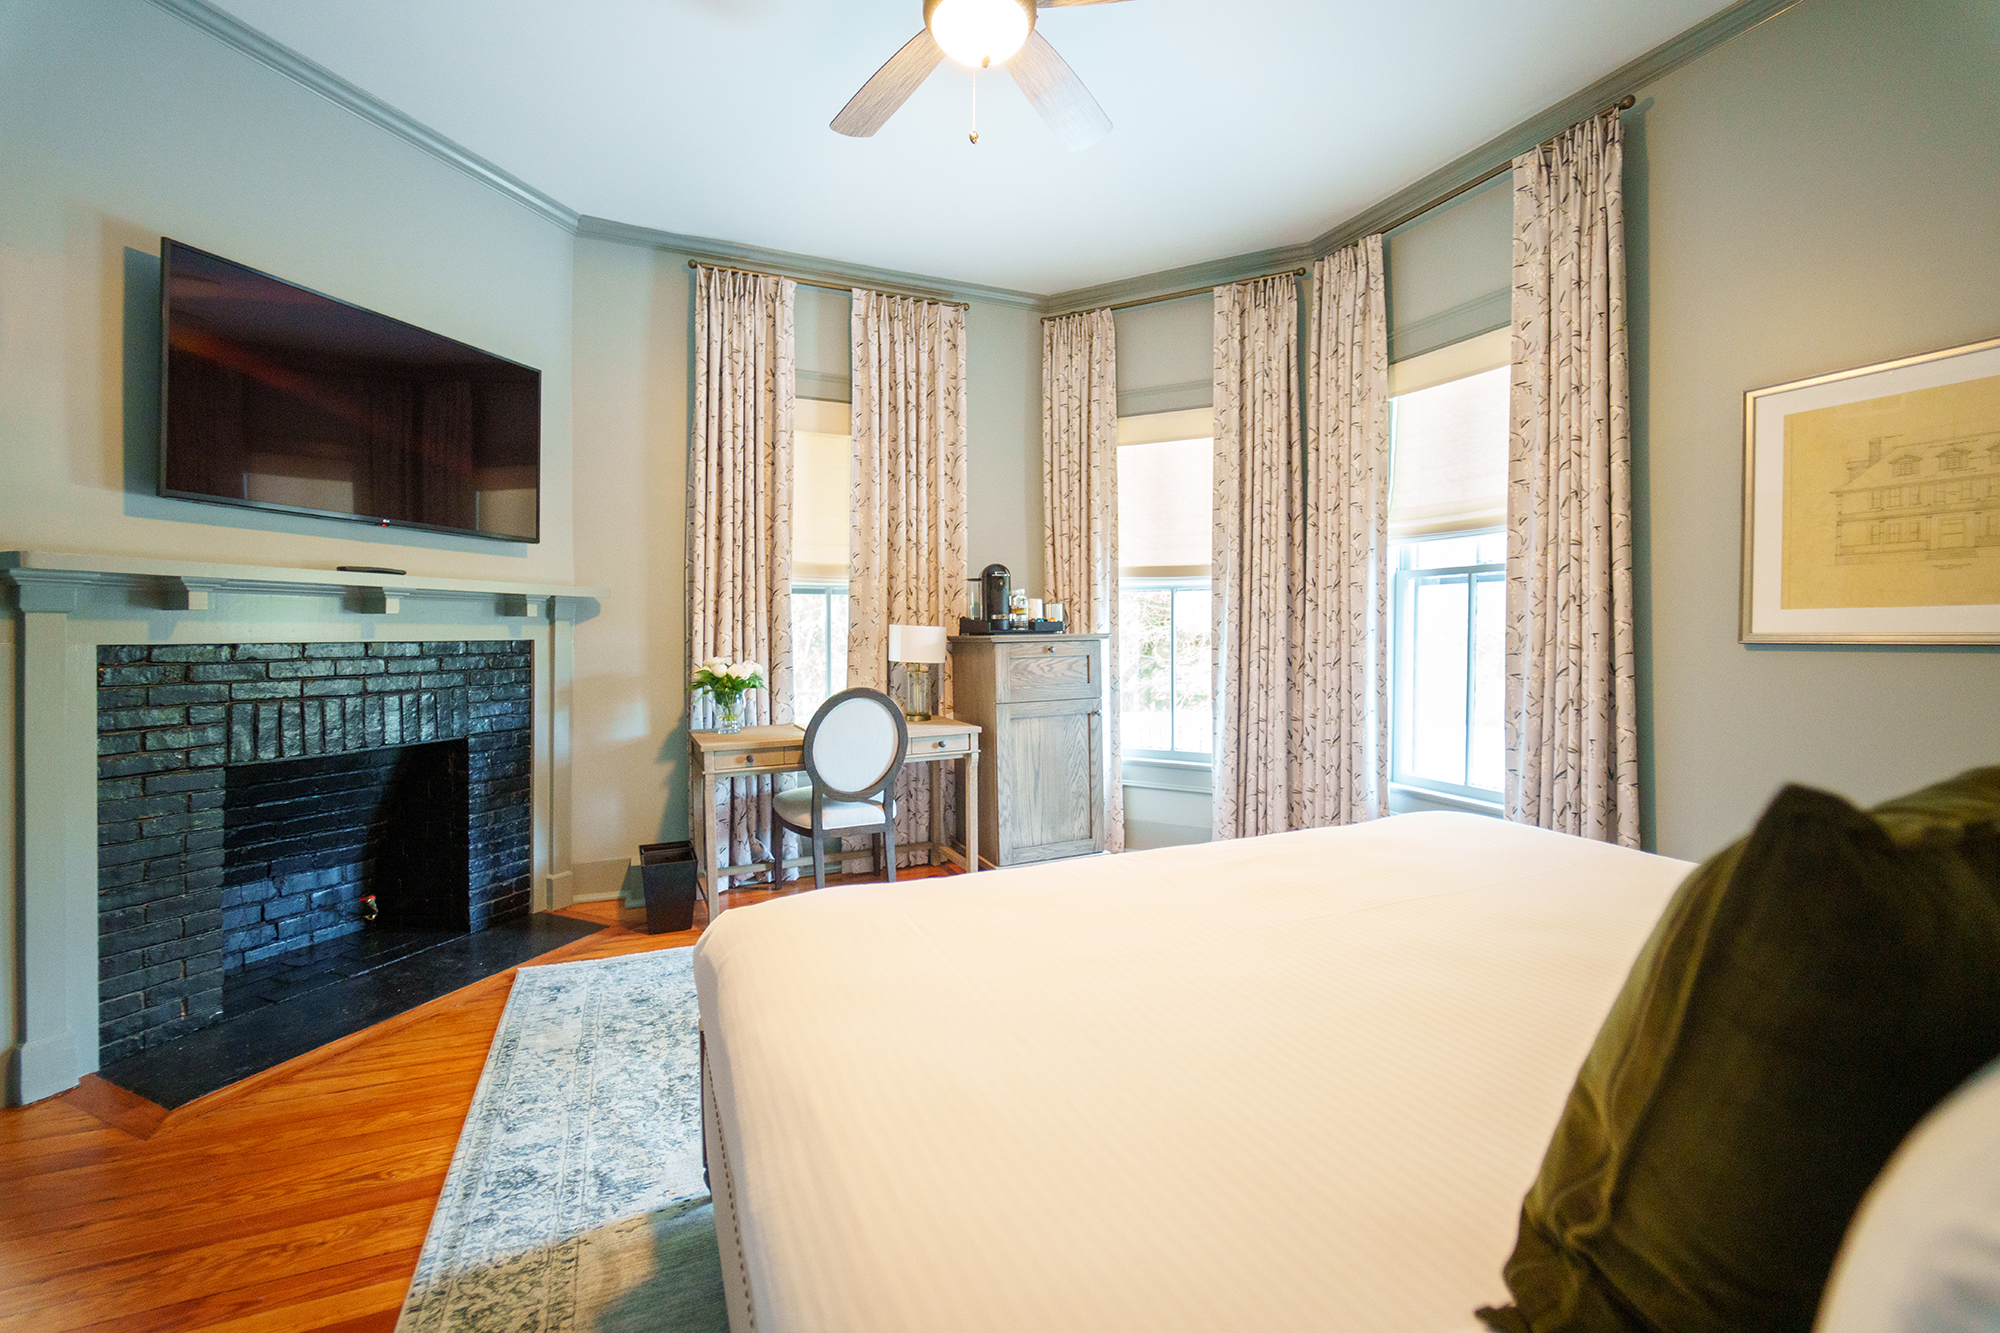 Bedroom -The Magnolia Inn - Pinehurst accommodations